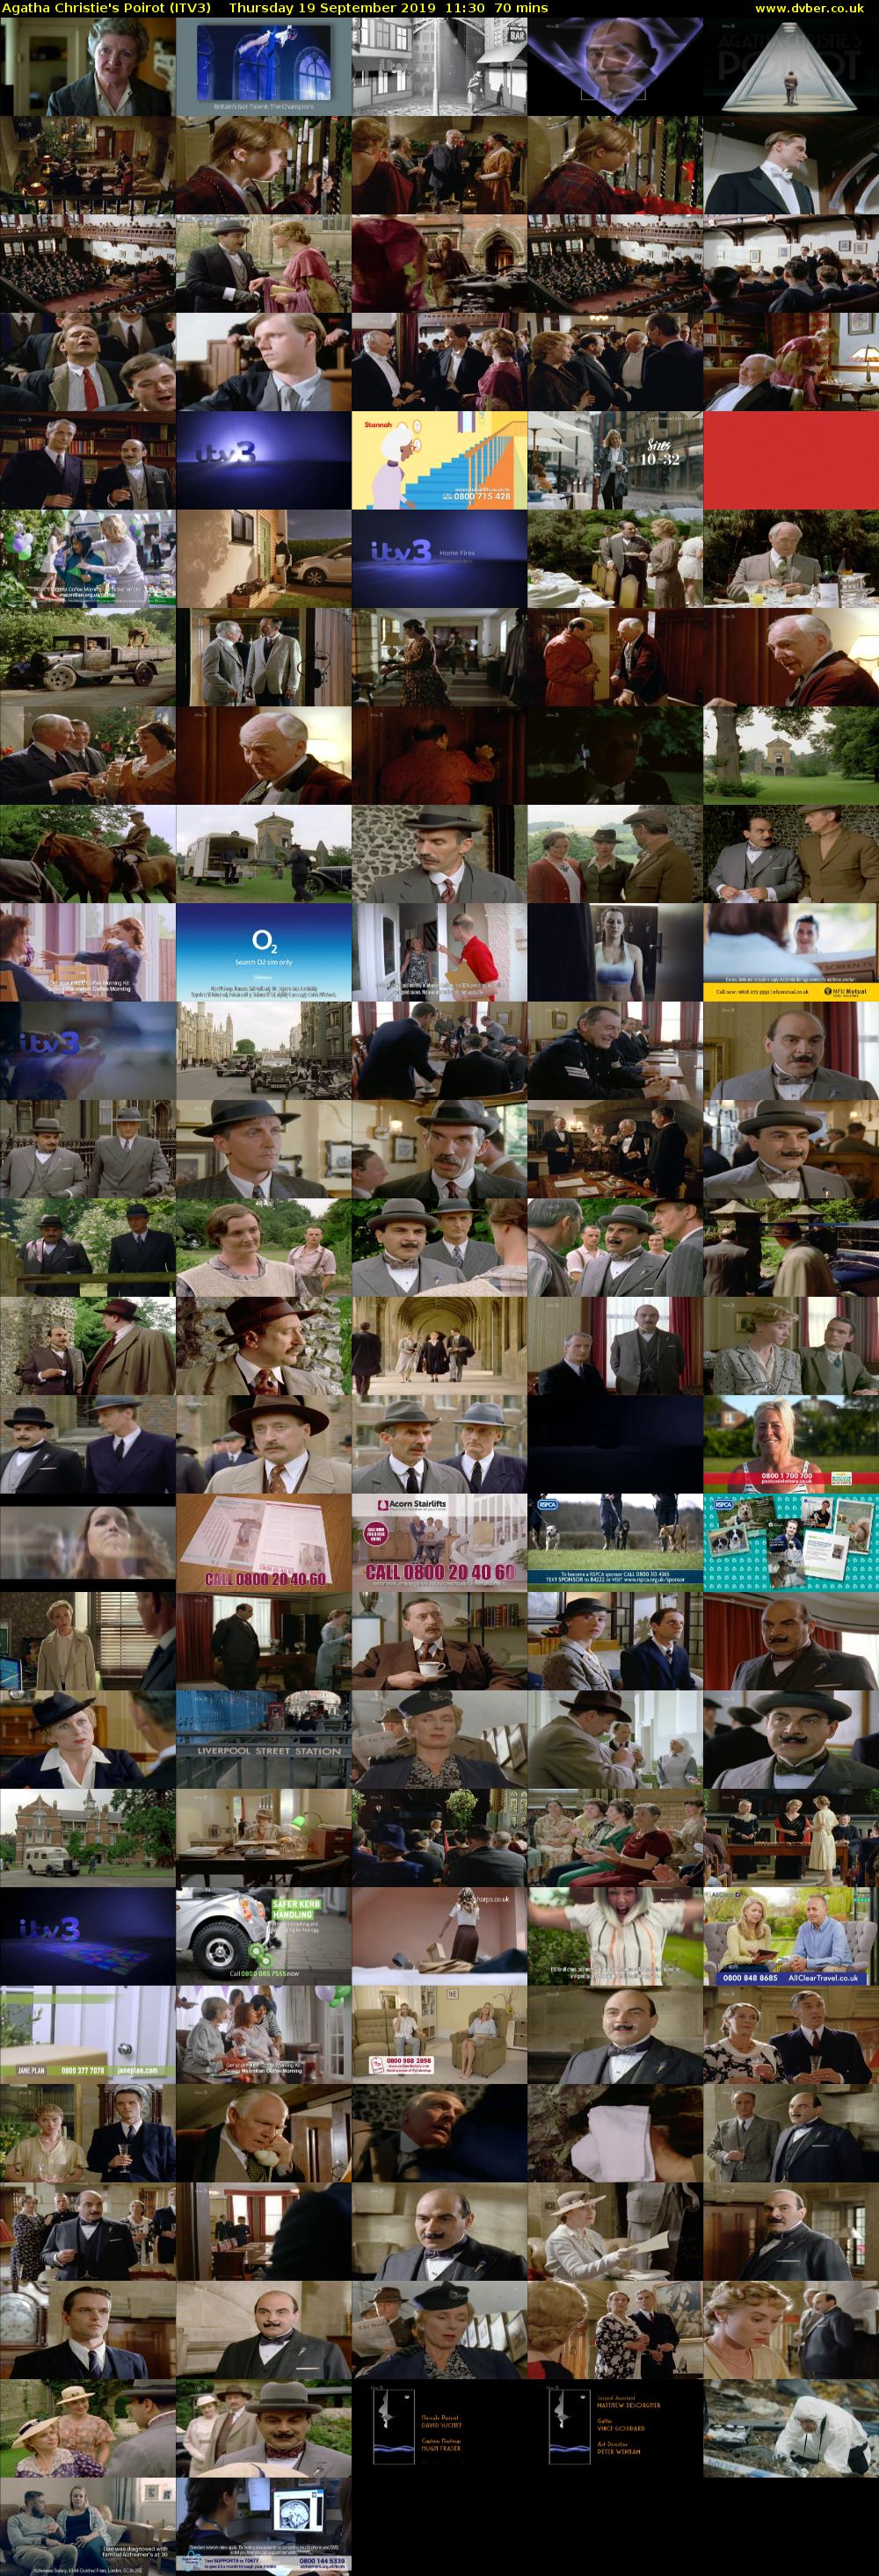 Agatha Christie's Poirot (ITV3) Thursday 19 September 2019 11:30 - 12:40